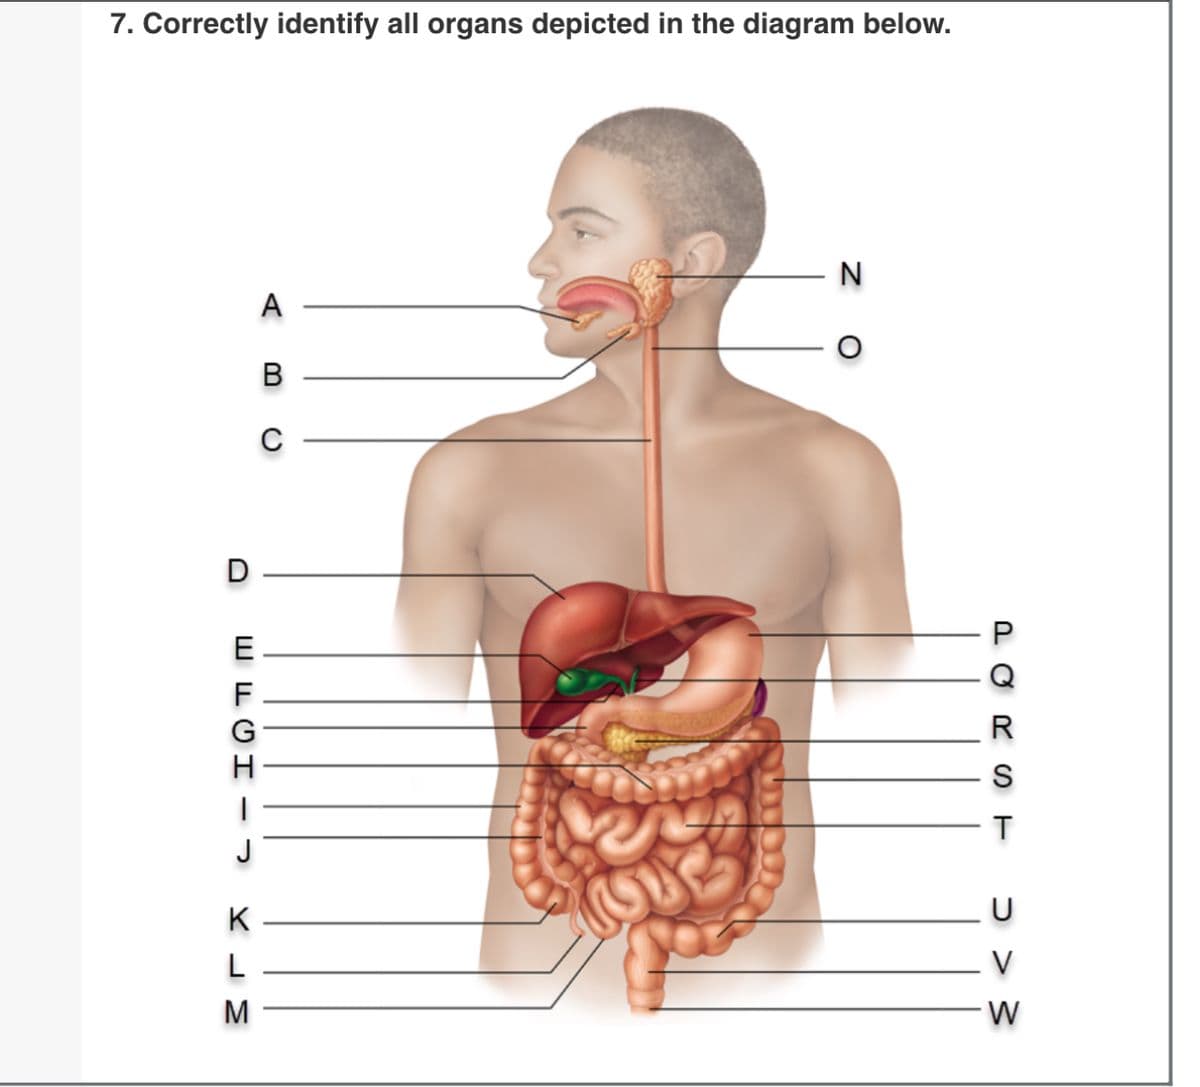 7. Correctly identify all organs depicted in the diagram below.
D
EFGH-
K
L
M
A
B
N
PORST
<< <
V
W